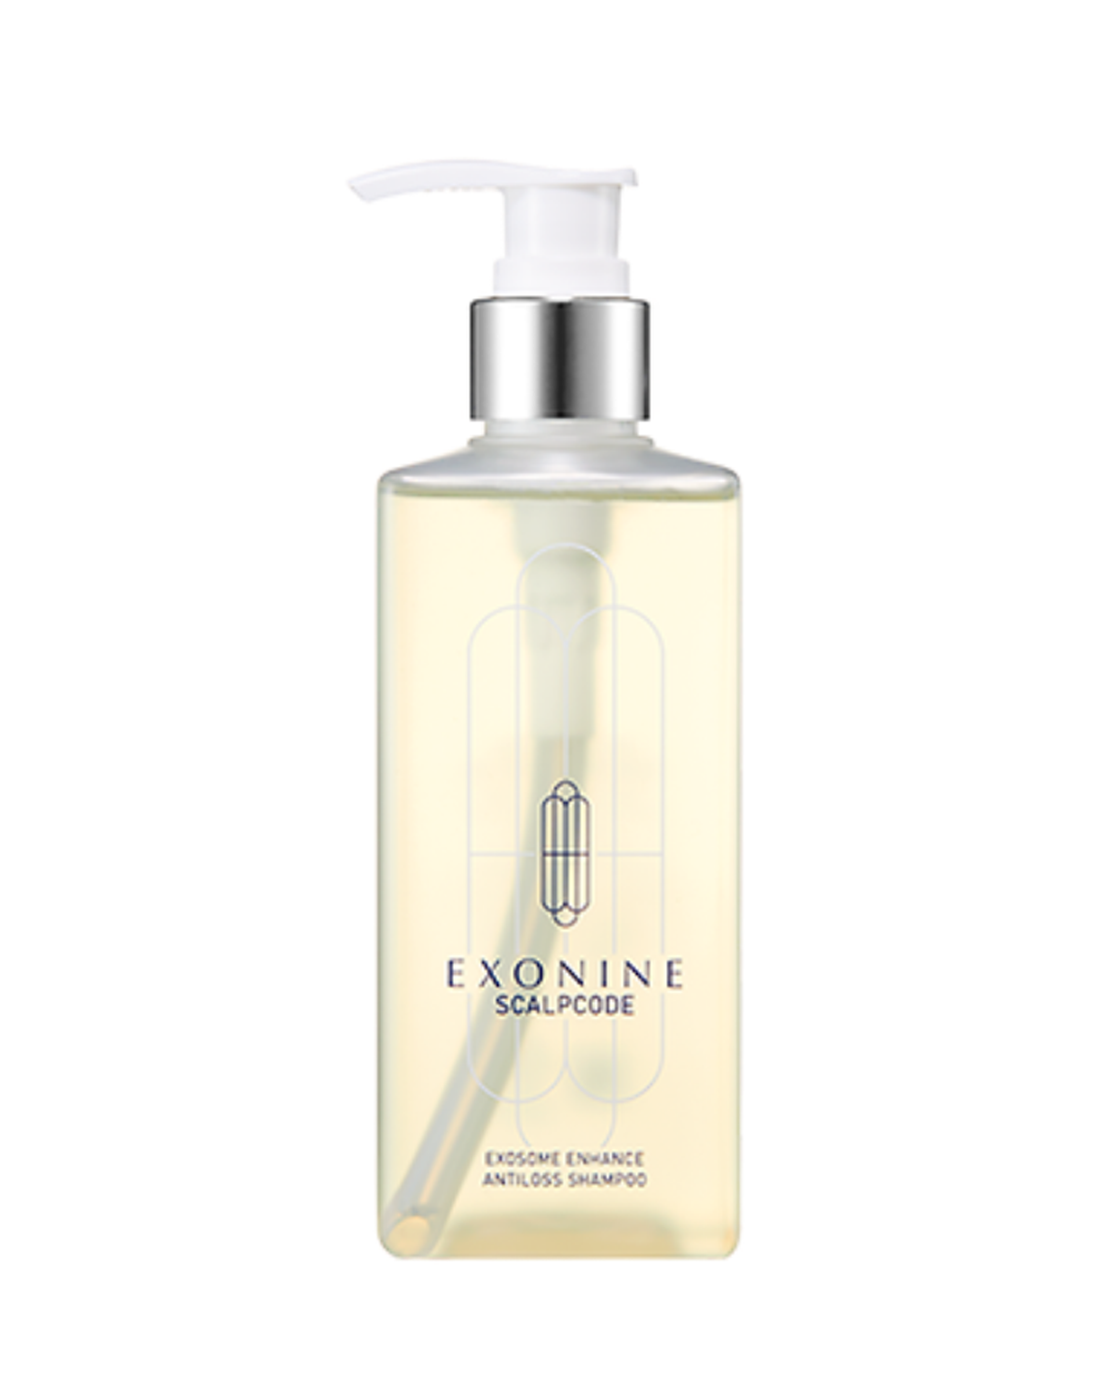 Exonine Scalpcode Exosome Enhance Antiloss Shampoo